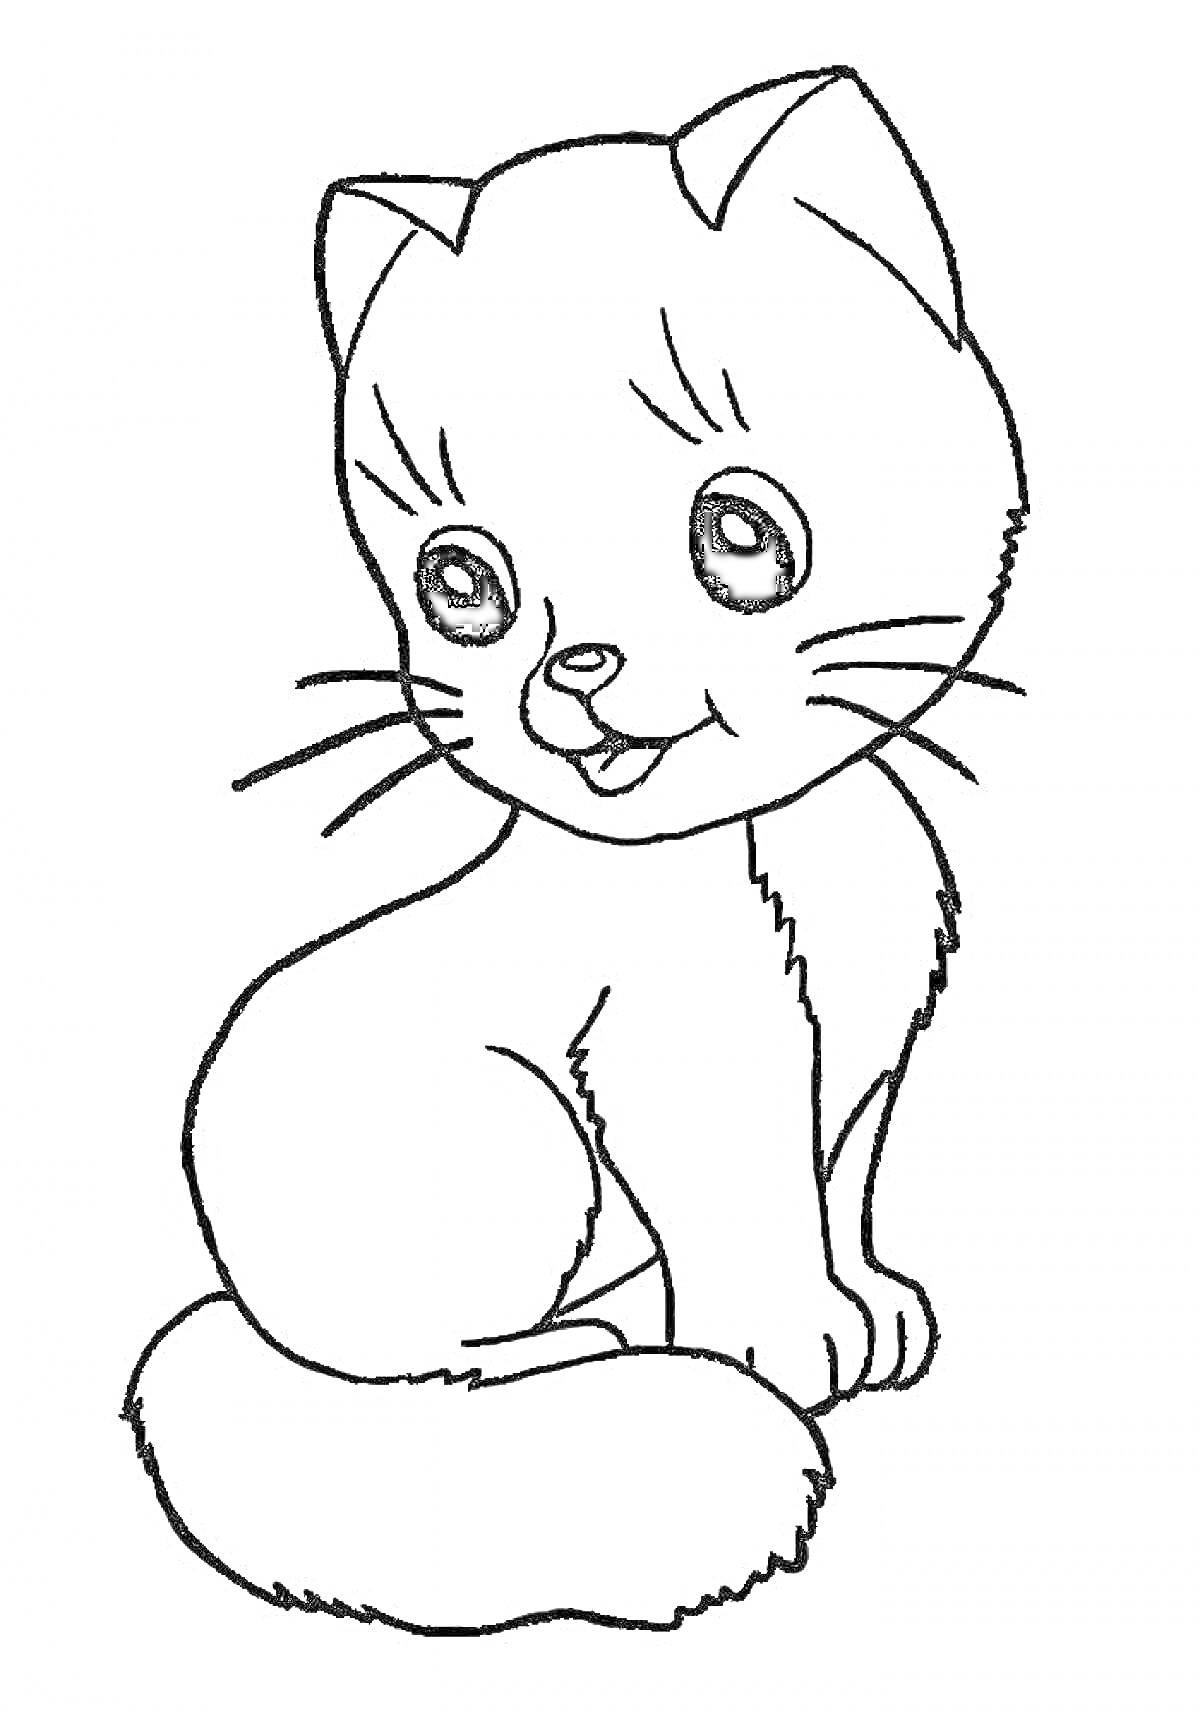 Котик с большими глазами и пушистым хвостом, сидящий и смотрящий вперёд